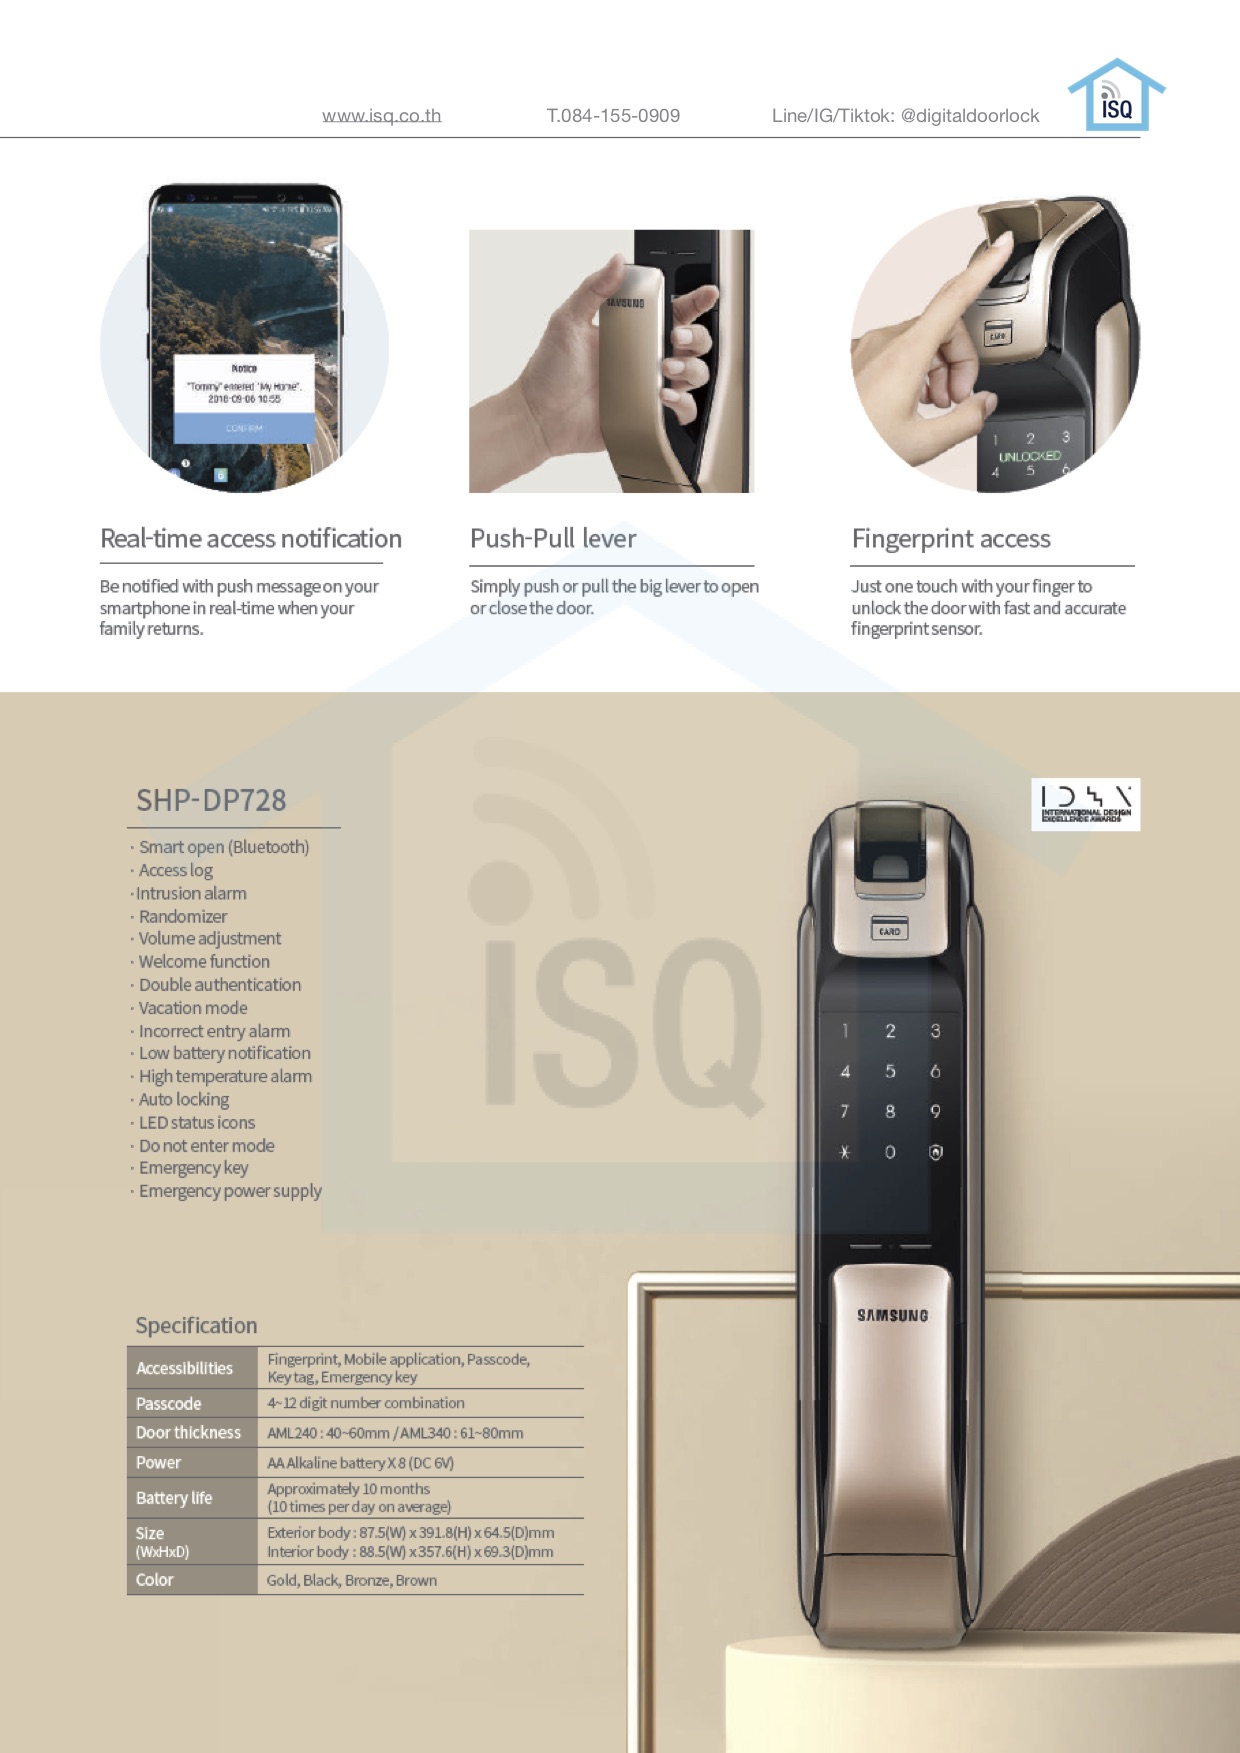 Samsung smart digital door lock SHP-DP728